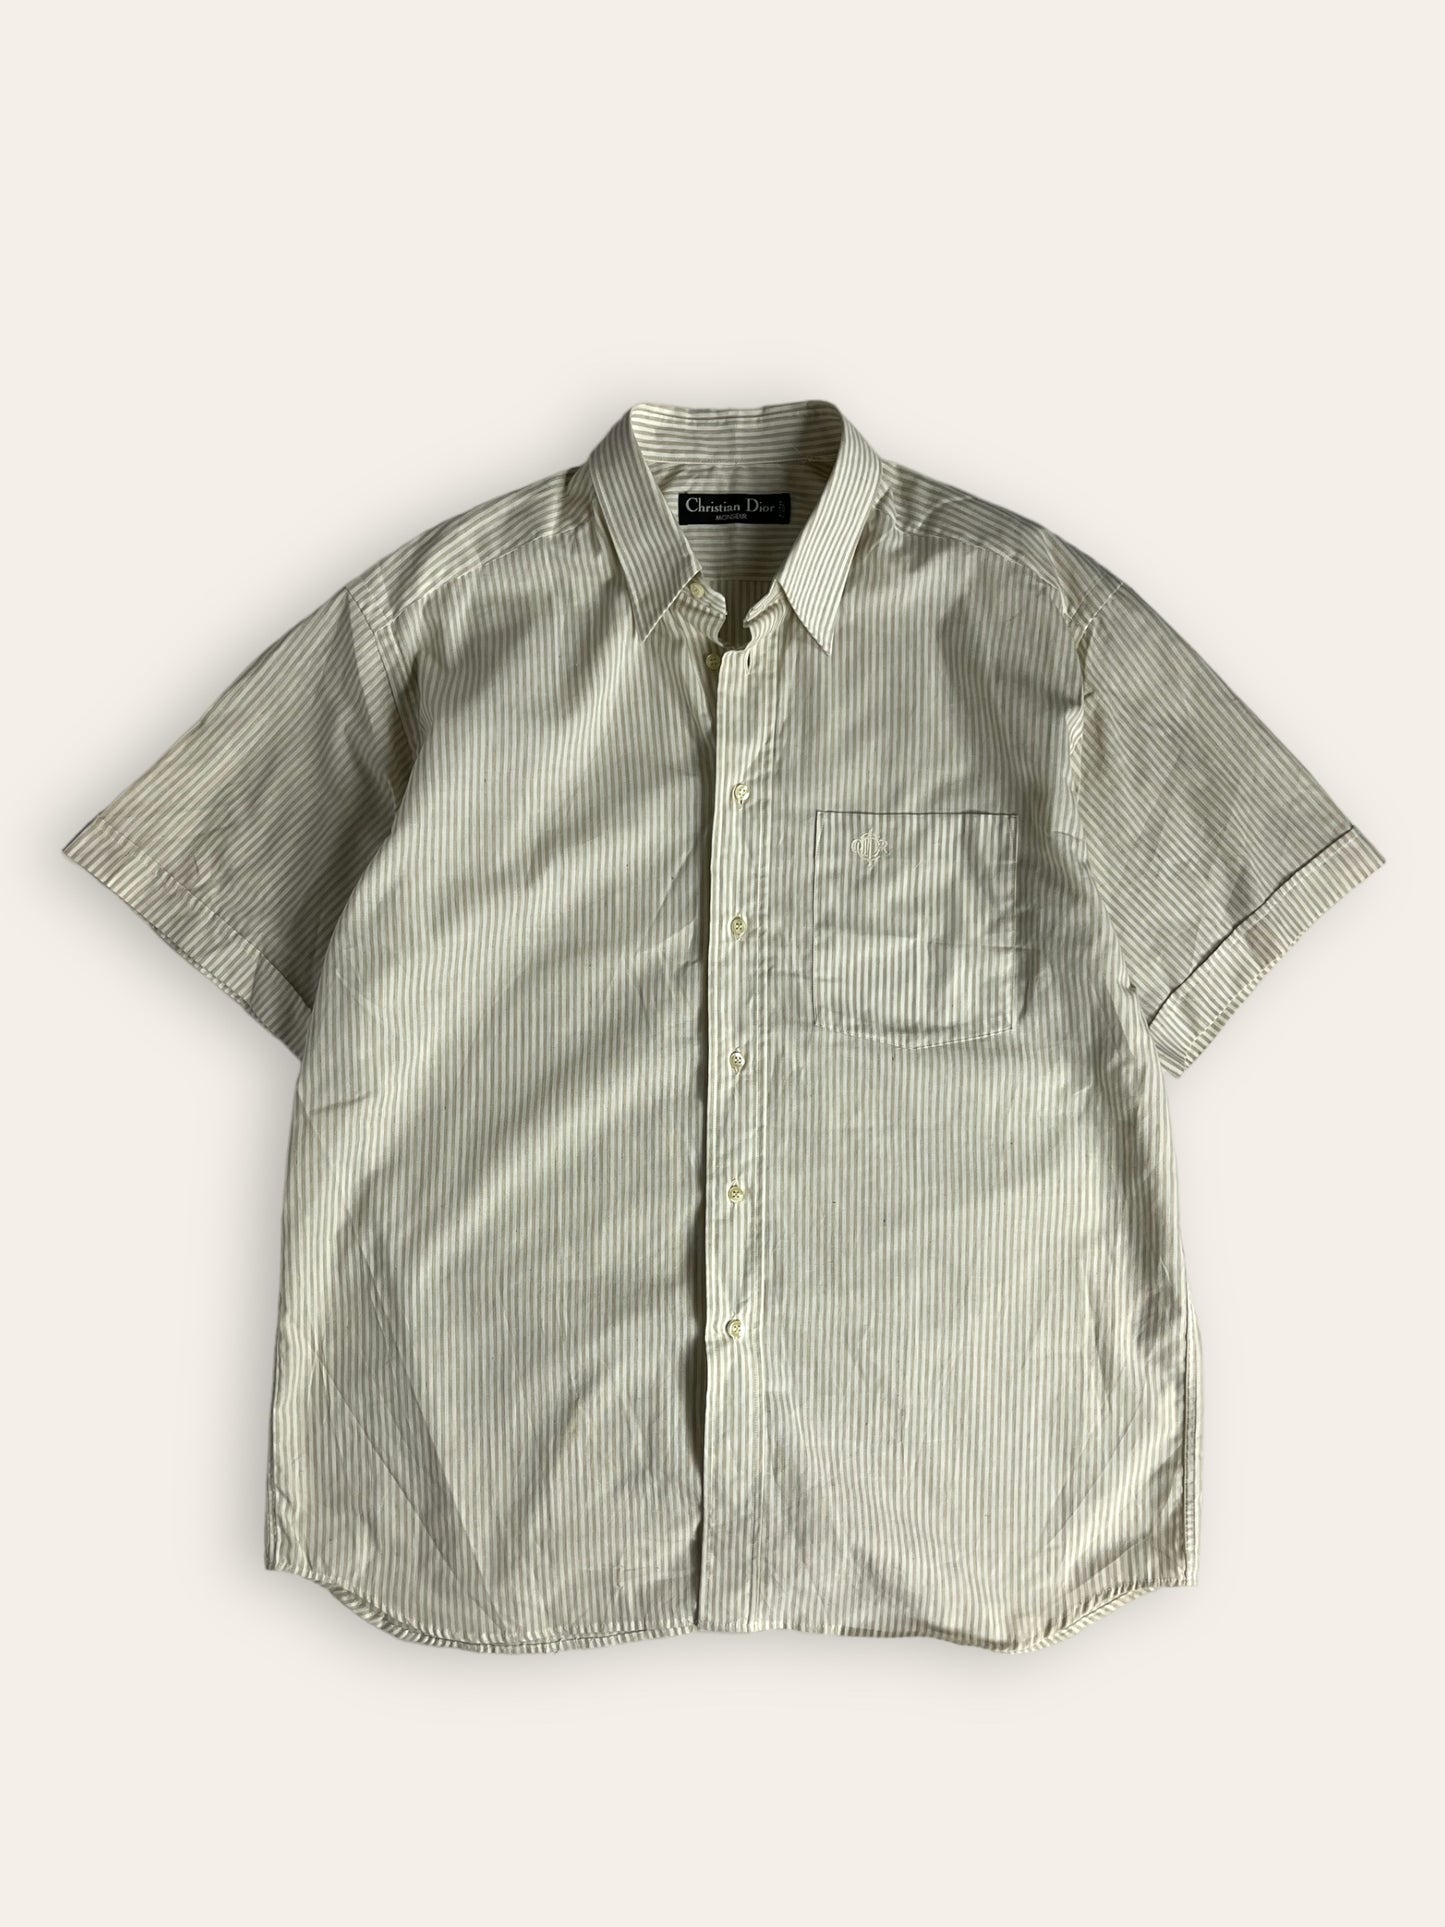 Dior Homme 90s Button up Summer Shirt